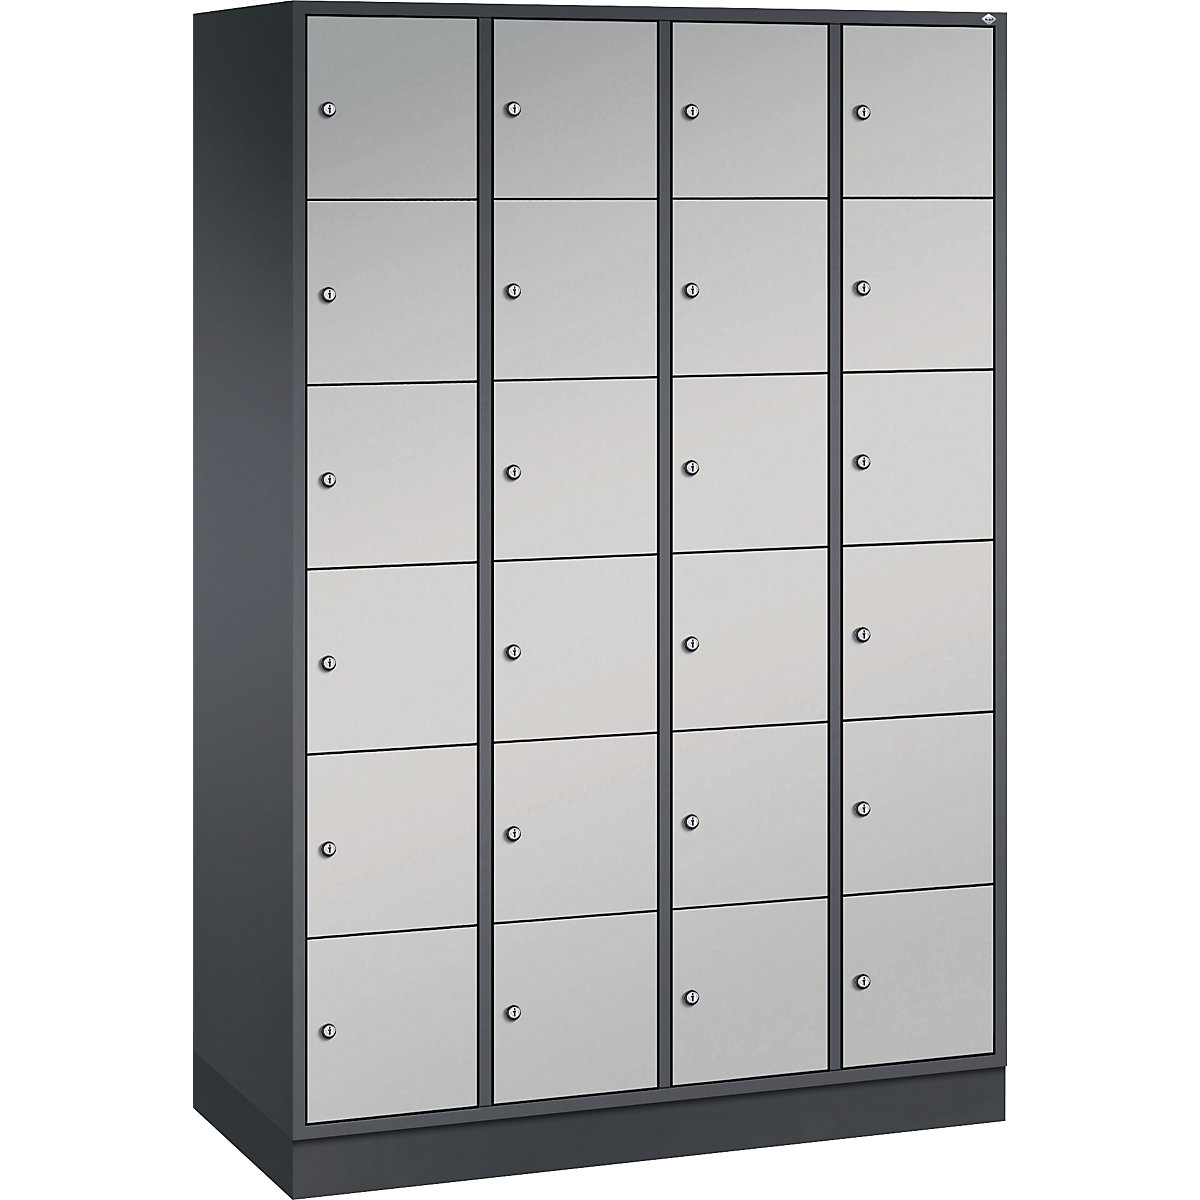 Vestiaire multicases en acier INTRO, casiers hauteur 285 mm – C+P, l x p 1220 x 500 mm, 24 casiers, corps gris noir, portes coloris aluminium-16